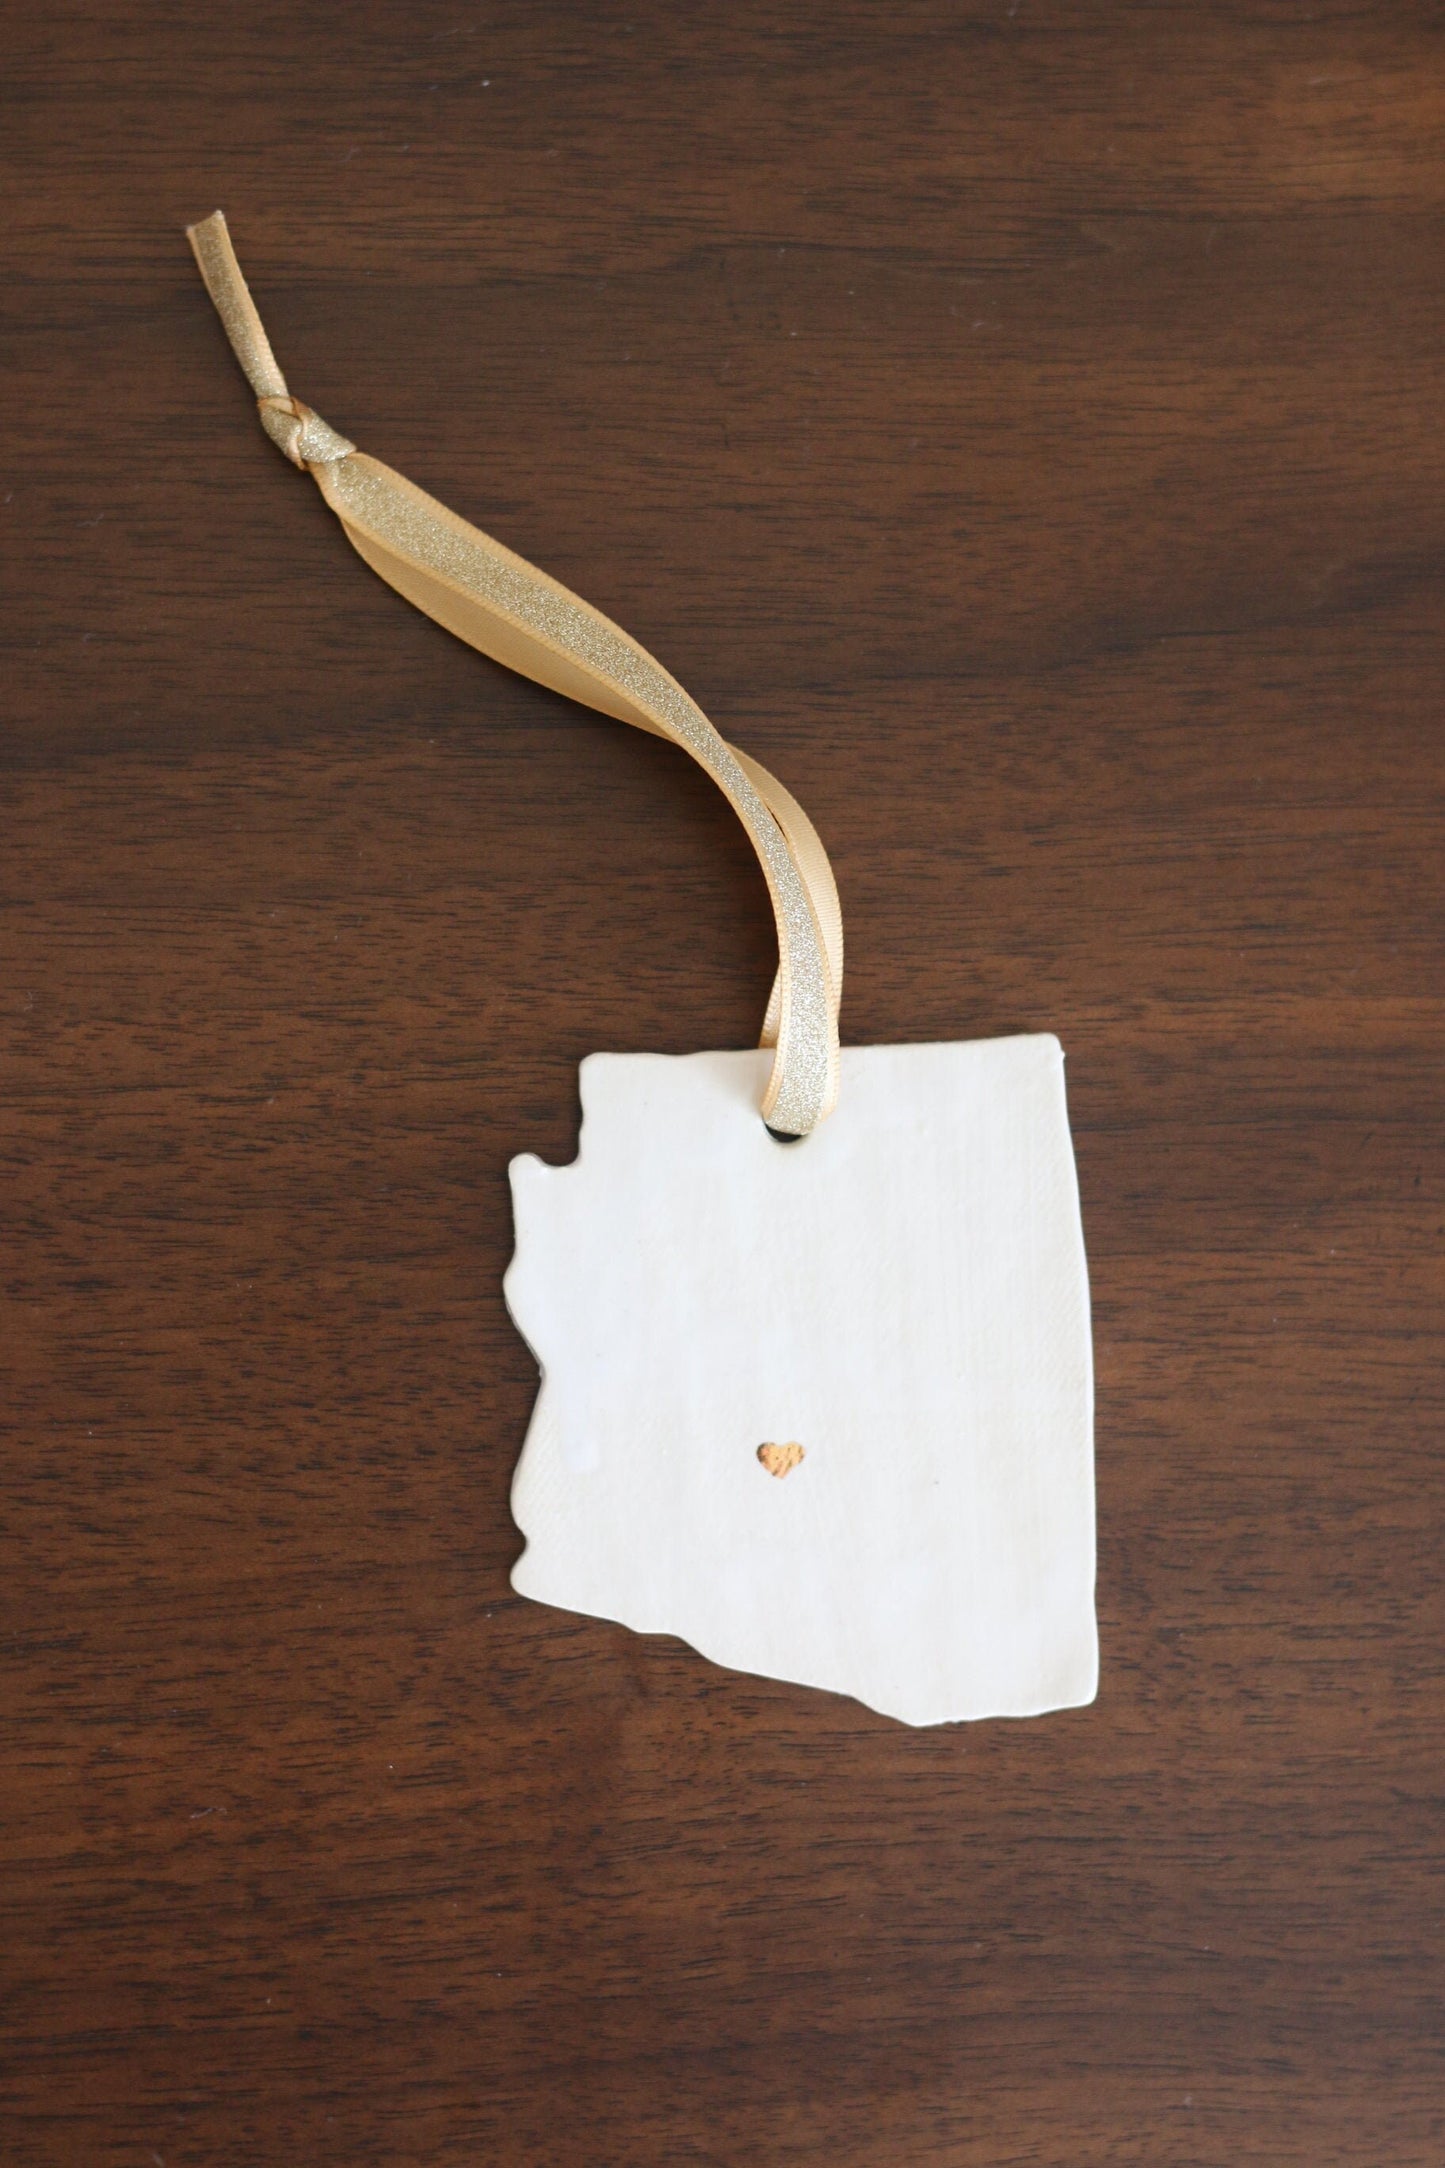 Handmade Glossy White Ceramic Stoneware Arizona Ornament with 22 Karat Gold Heart